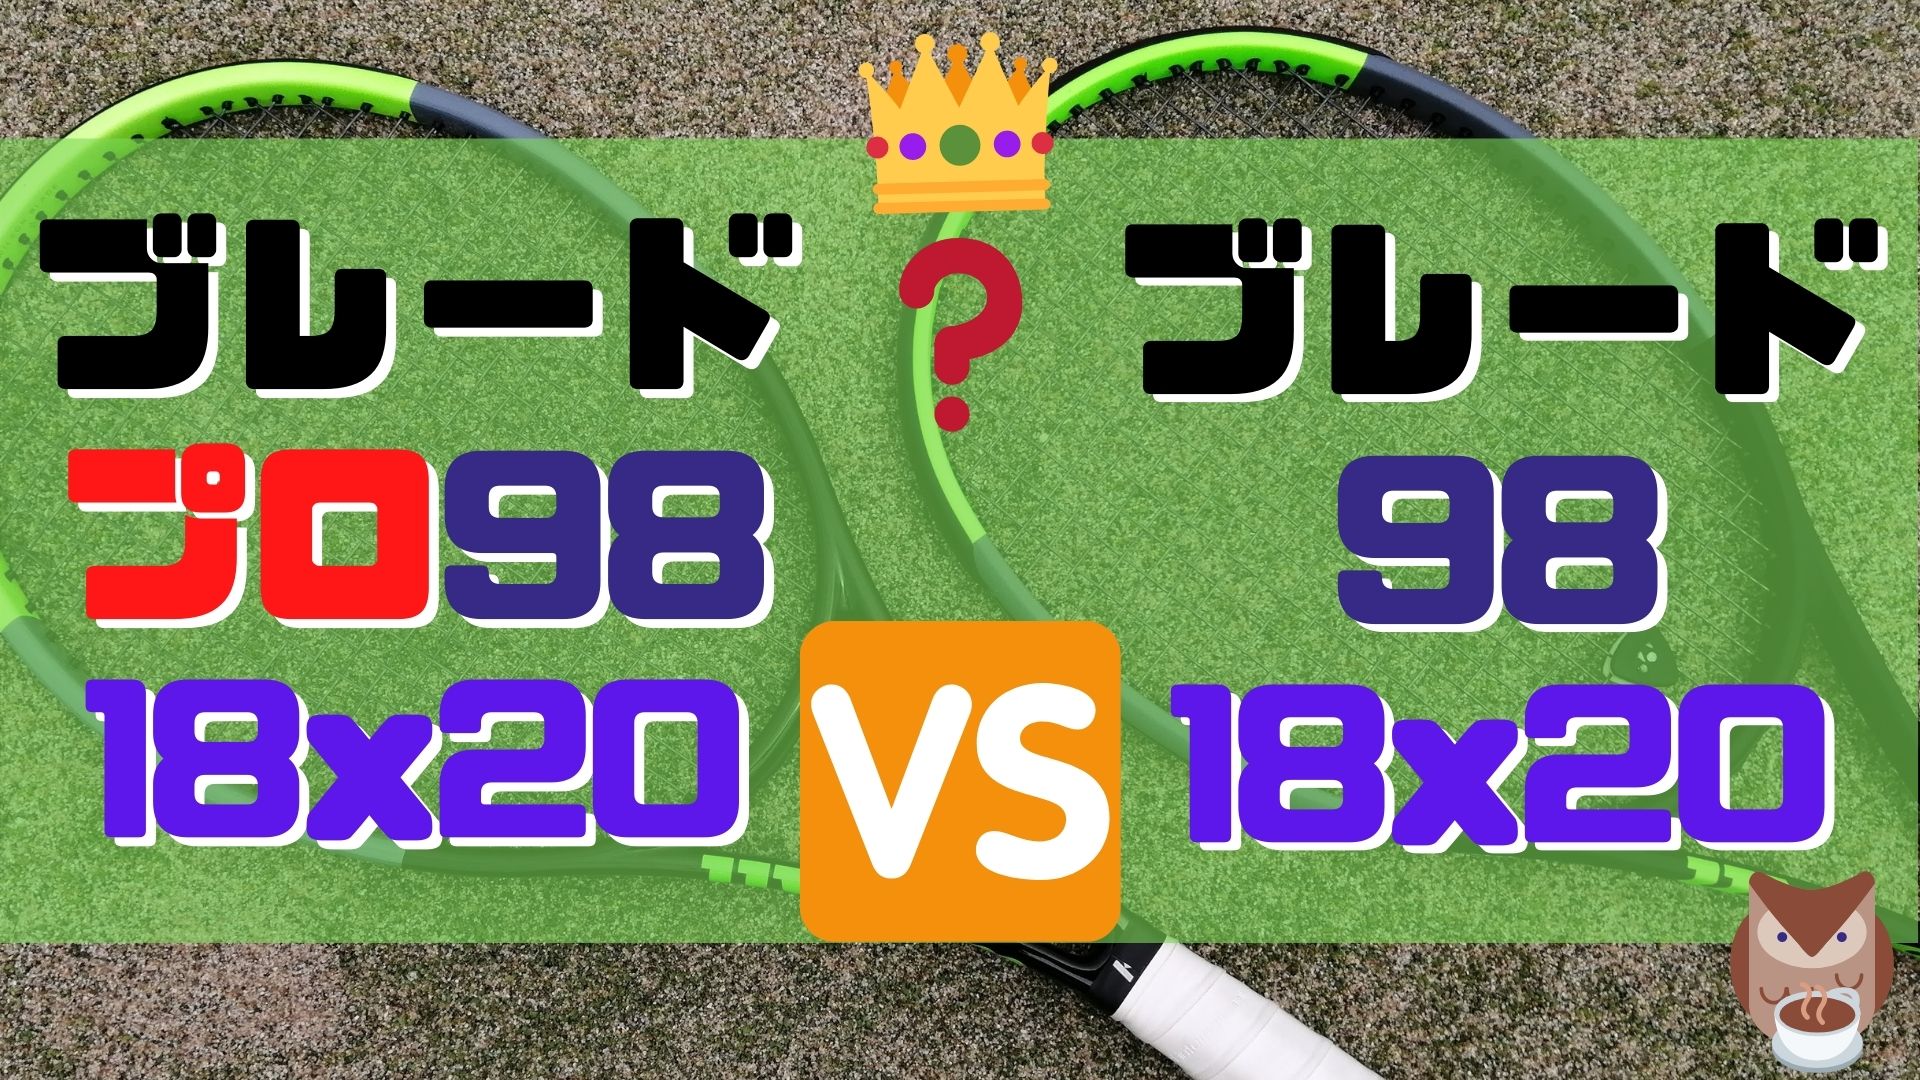 ブレードプロ 98(18×20) vs. ブレード98(18×20)【インプレ比較】